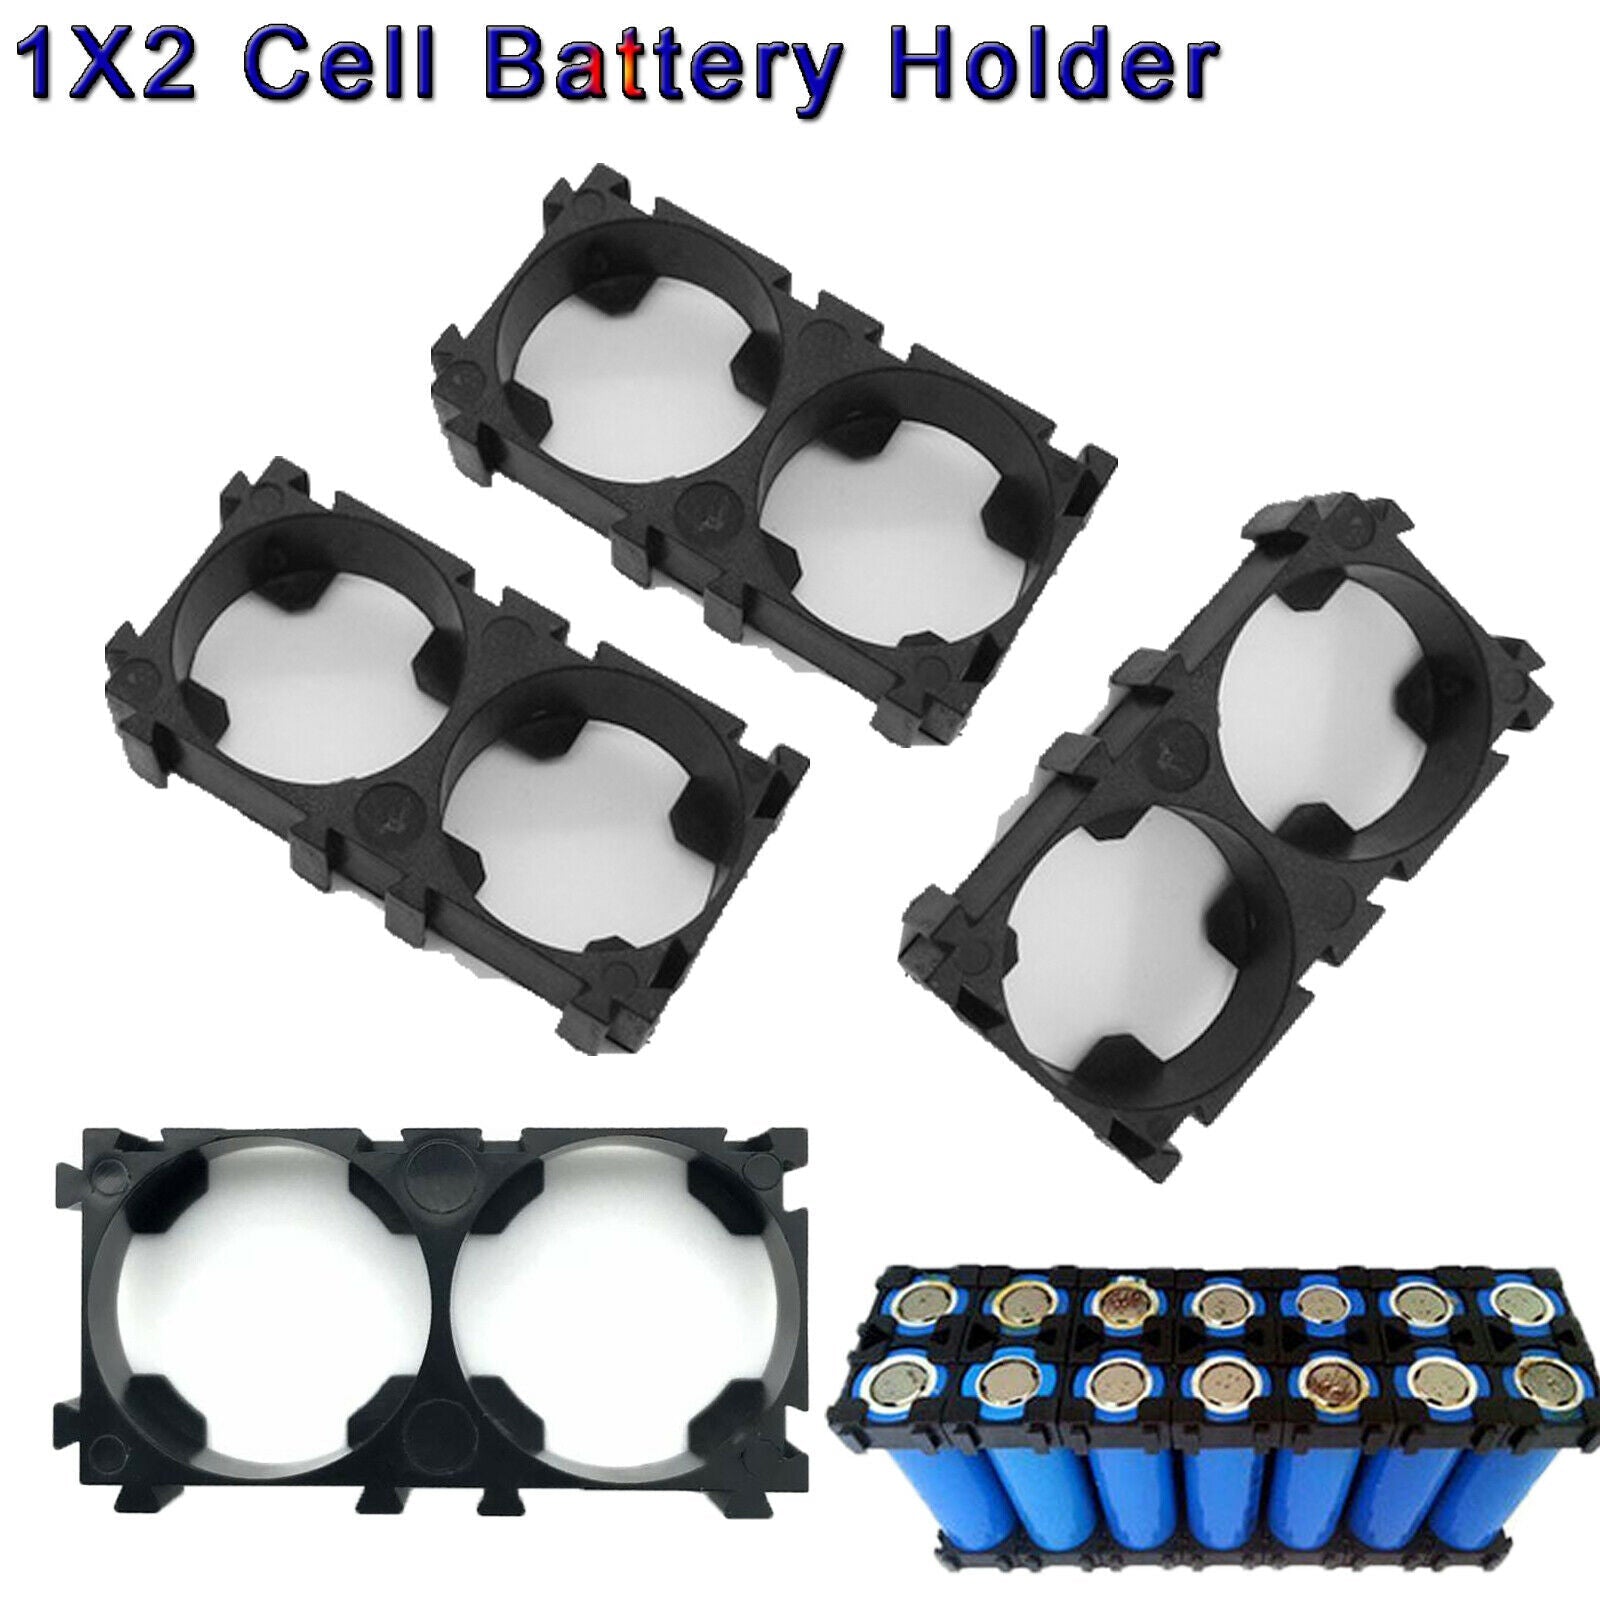 21650/21700 1x2 Battery Cell Spacer/Holder/Bracket